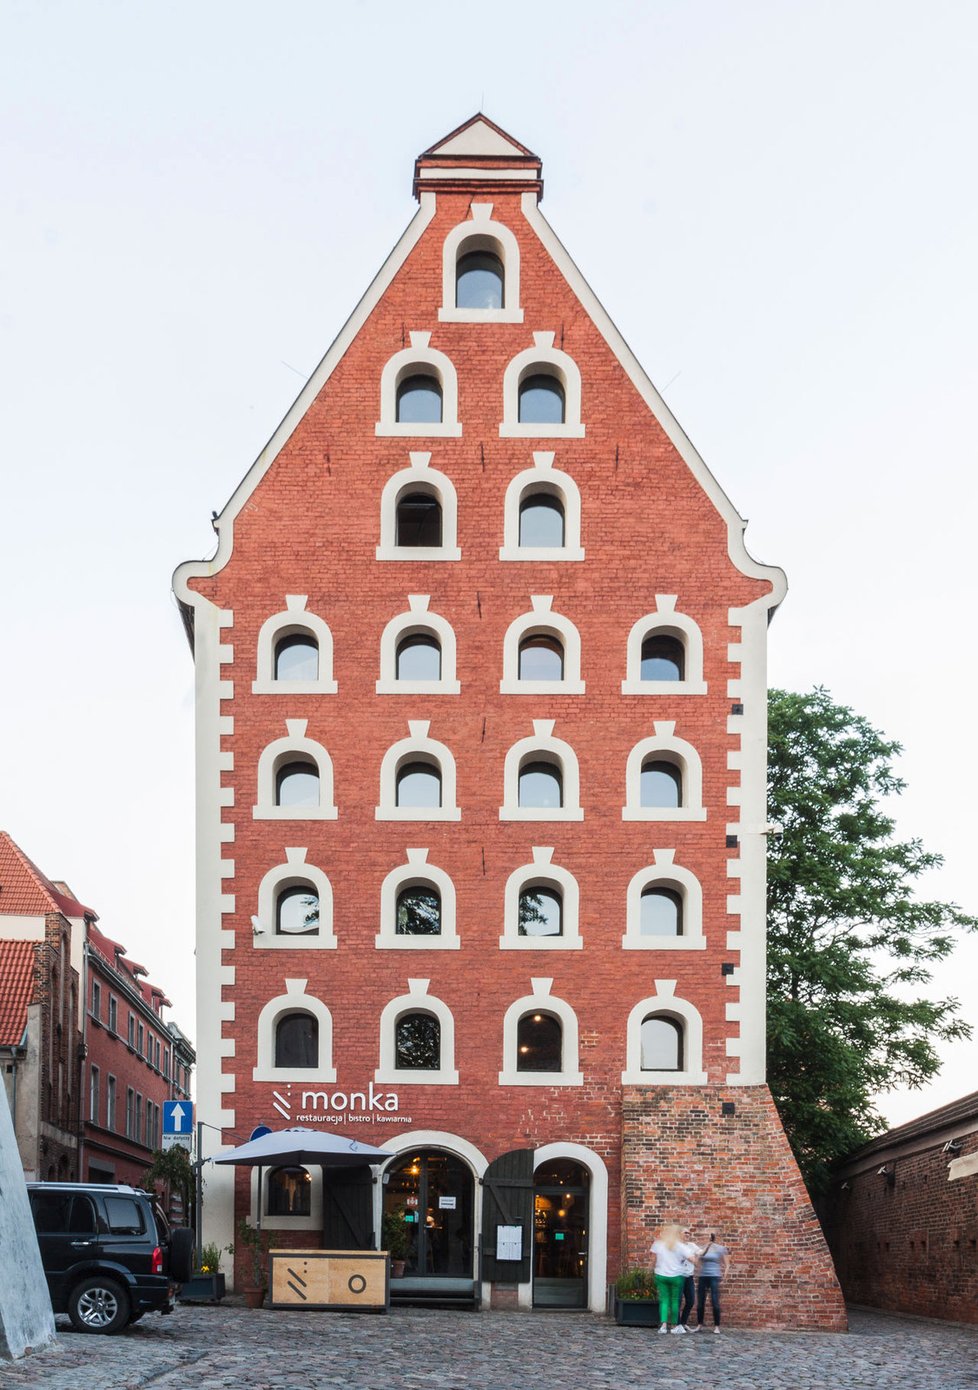 Moderní apartmány v barokní budově  překvapí barevností a citlivou rekonstrukcí historických prostor